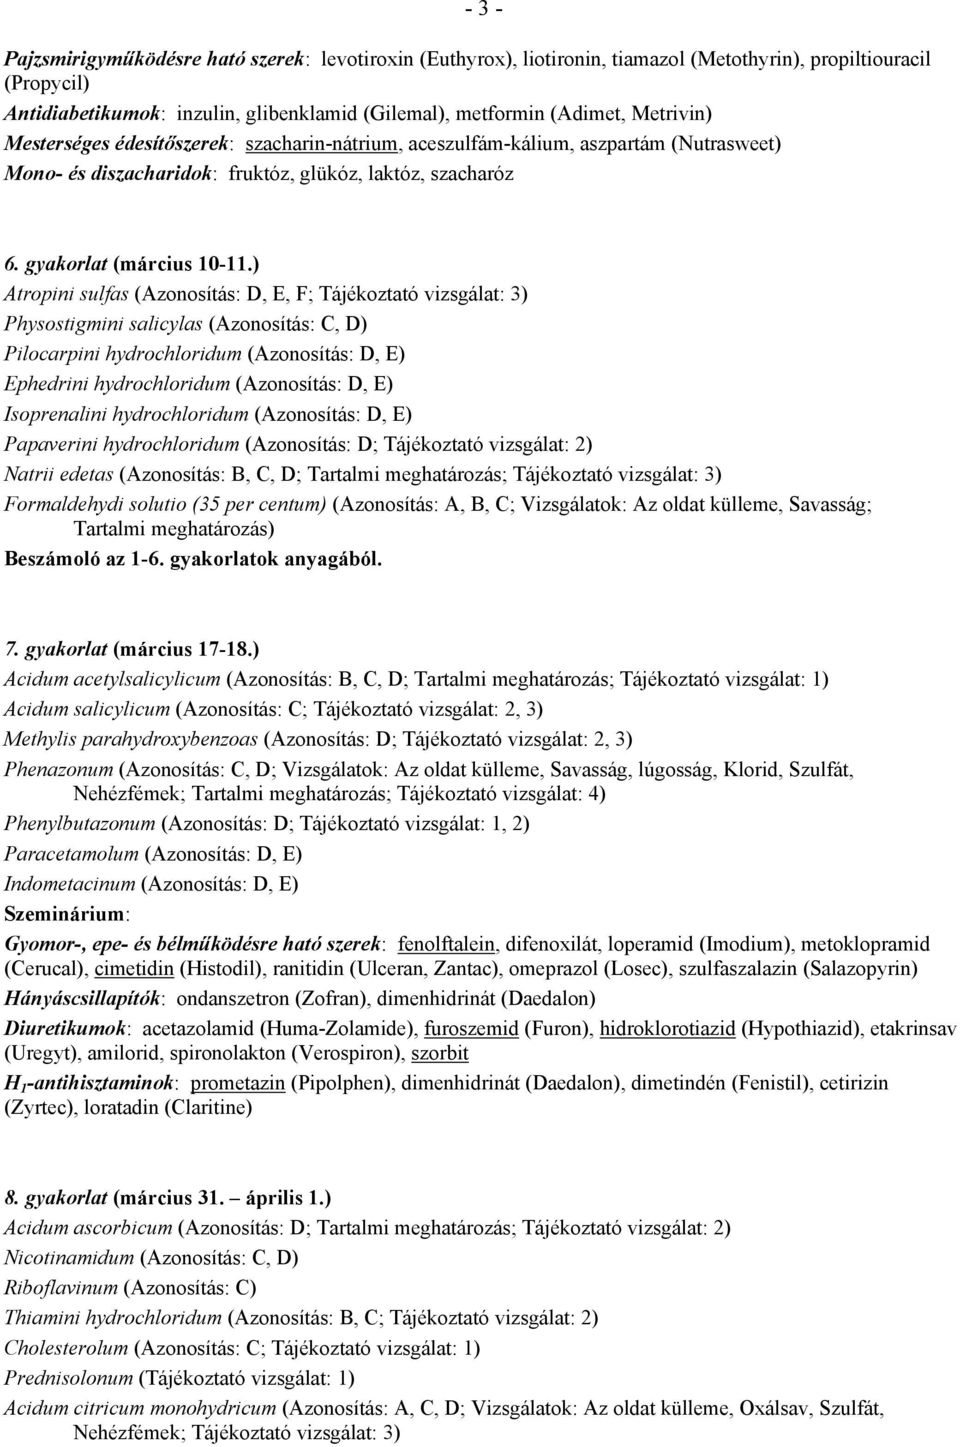 ) Atropini sulfas (Azonosítás: D, E, F; Tájékoztató vizsgálat: 3) Physostigmini salicylas (Azonosítás: C, D) Pilocarpini hydrochloridum (Azonosítás: D, E) Ephedrini hydrochloridum (Azonosítás: D, E)